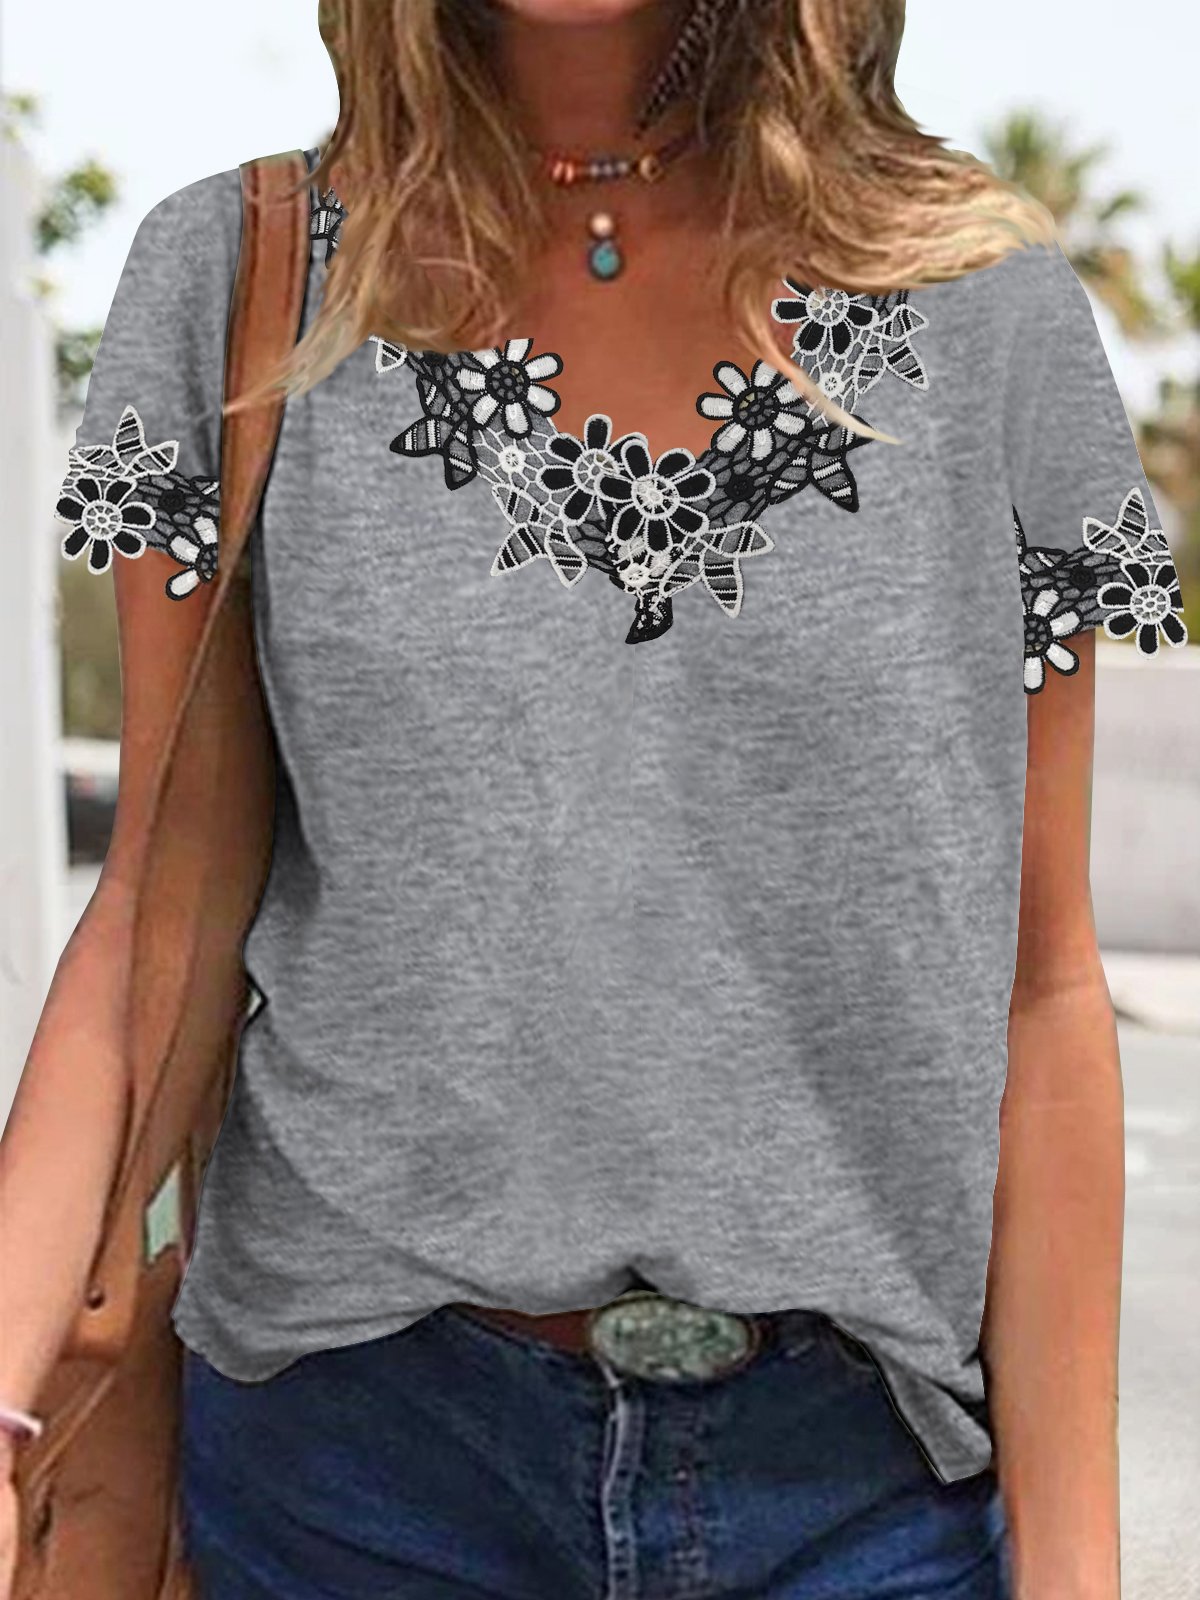 Plain simple flower lace top T-shirt